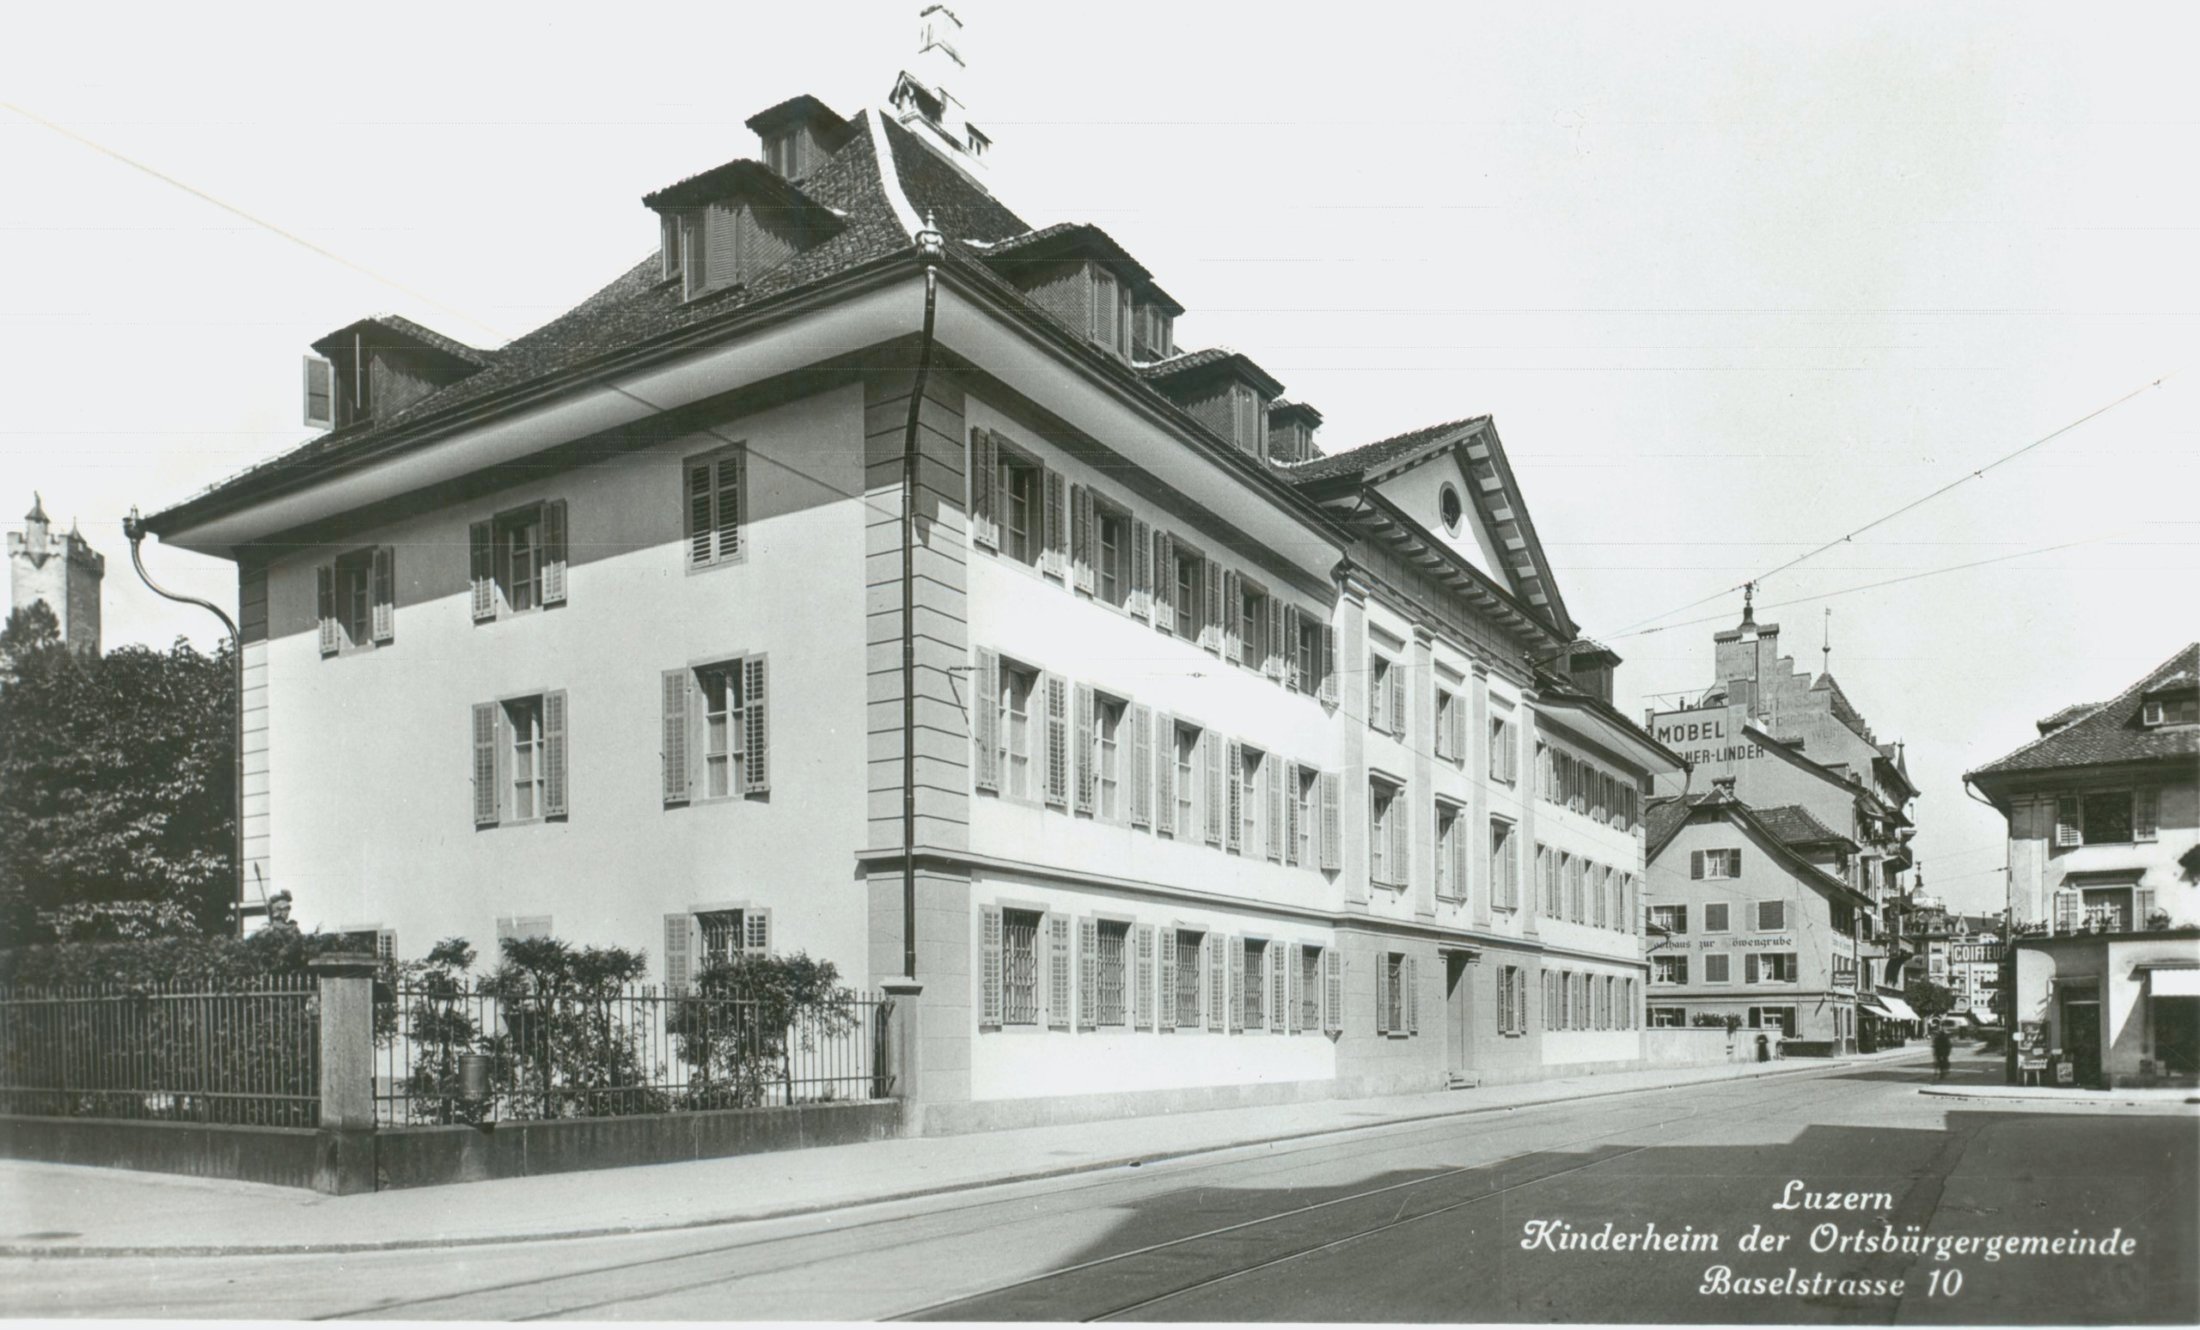 Kinderheim der Ortsbürgergemeinde: Fassadenansicht Ansichtskarte; Verlag: E. Goetz, Luzern ohne Datierung, zwischen 1911 und 1960